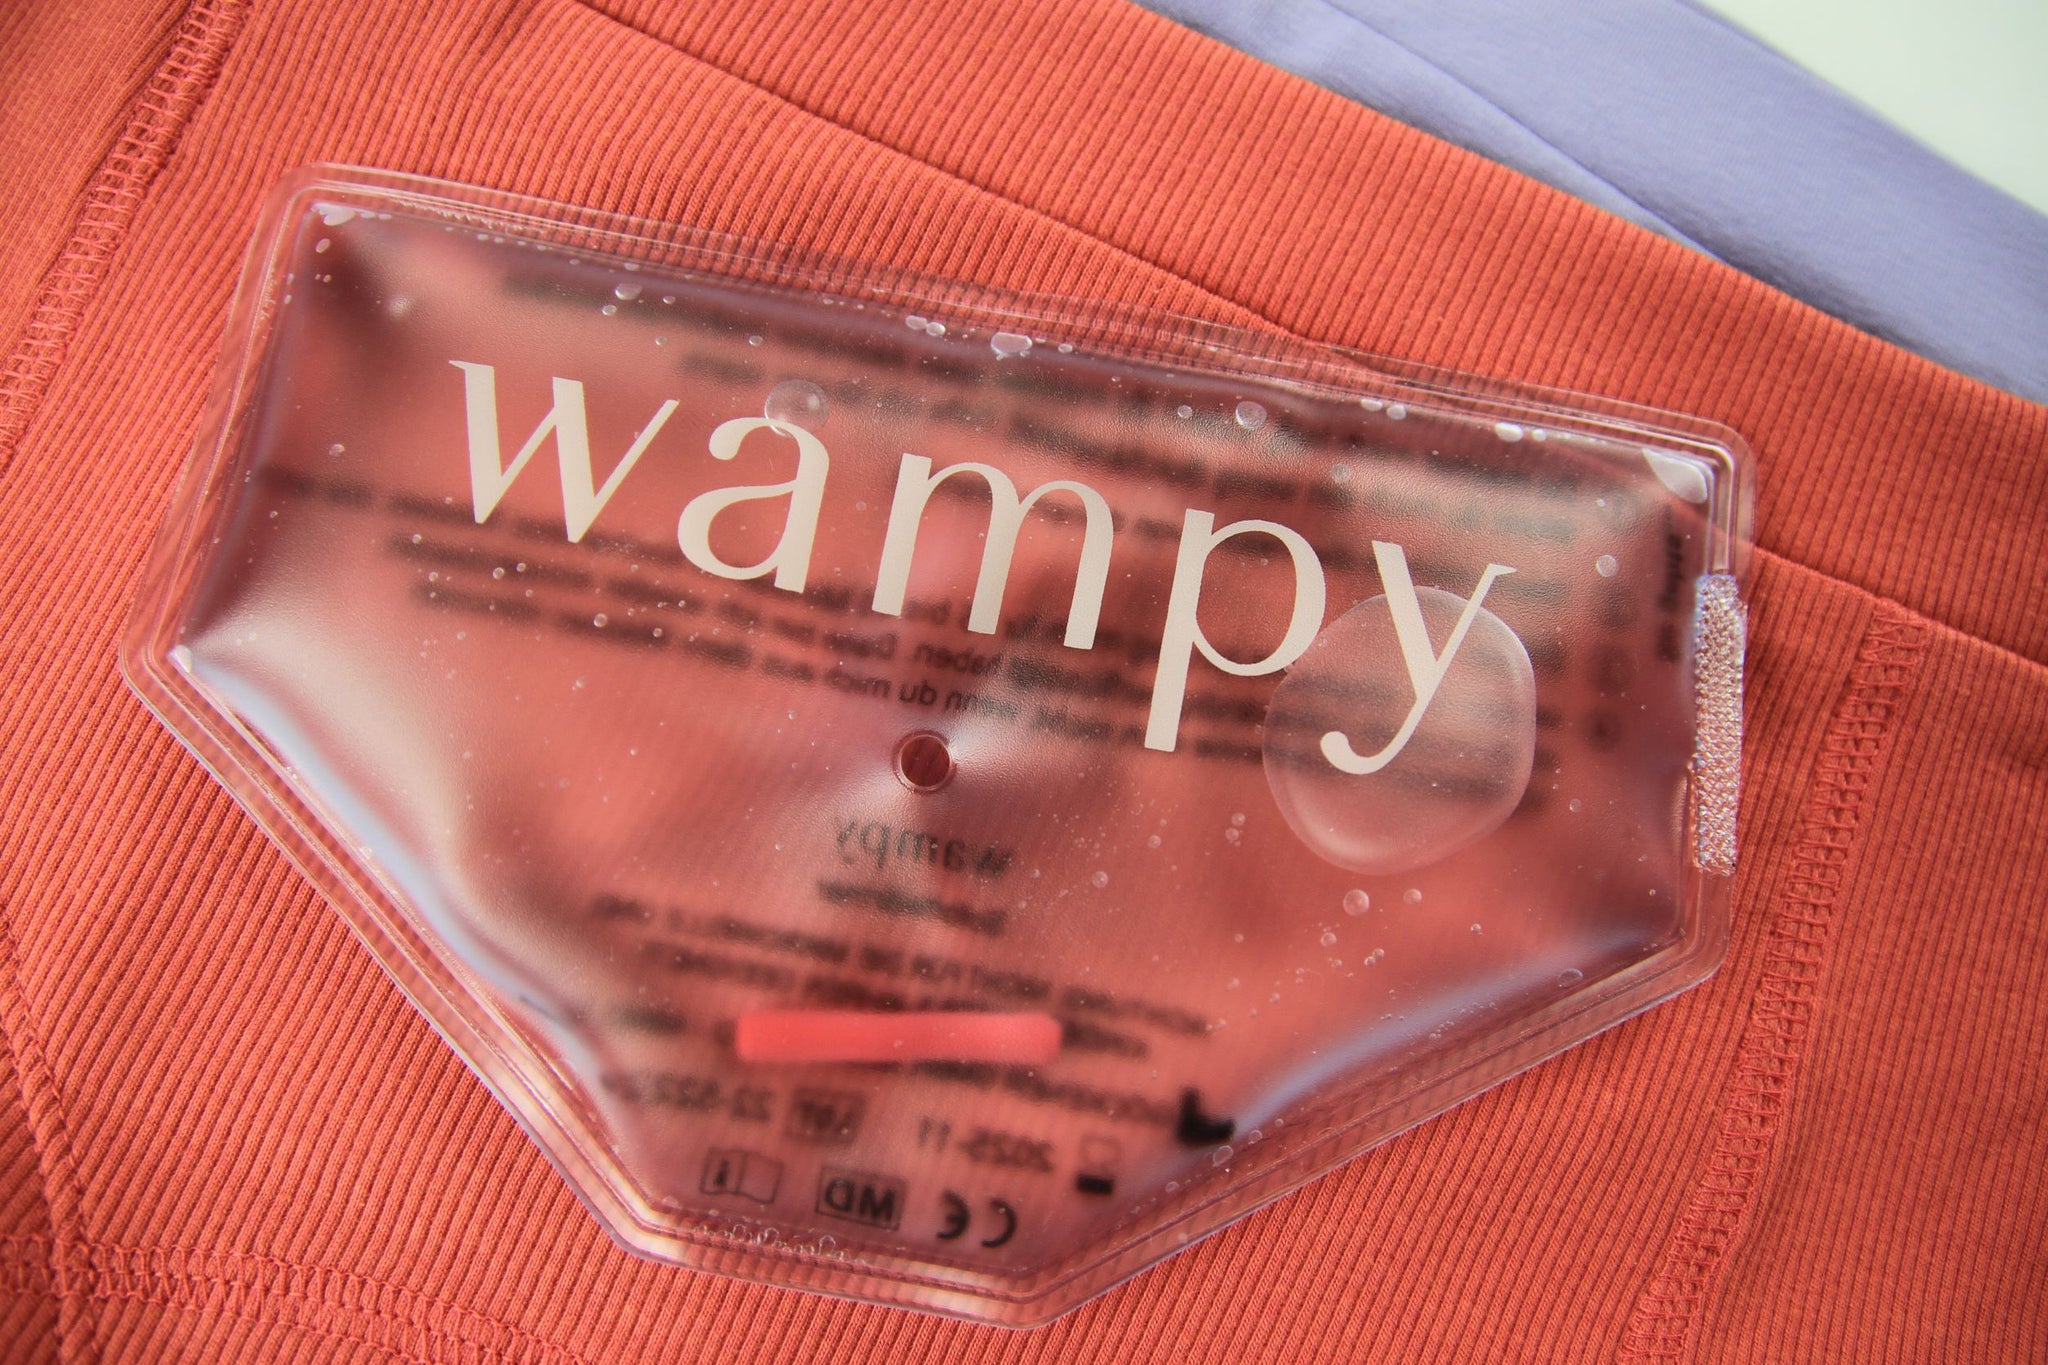 Wampy Wärmepad auf rosaroter und lavendel Unterhose. Beheizbare Unterwäsche gegen Periodenschmerzen.